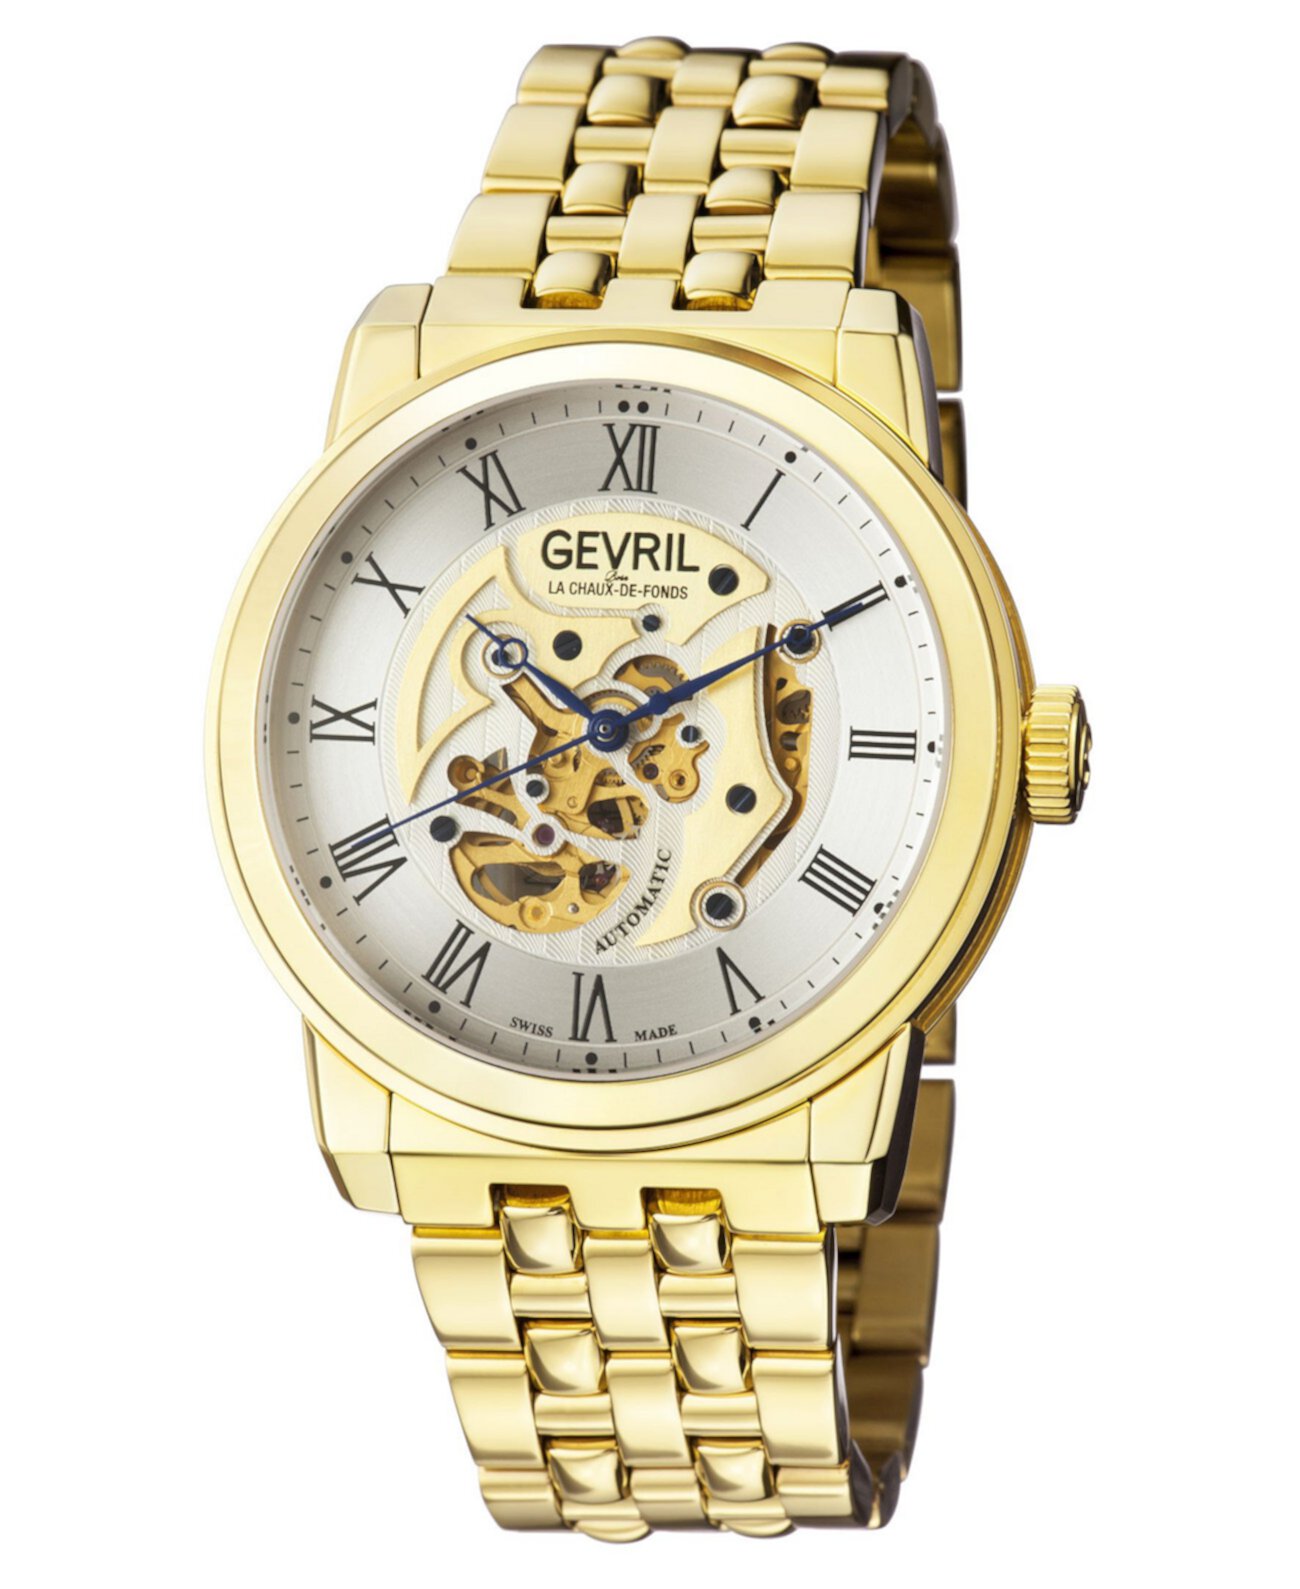 Мужские часы Vanderbilt Swiss Automatic Ion Plating с золотым браслетом из нержавеющей стали 47 мм Gevril